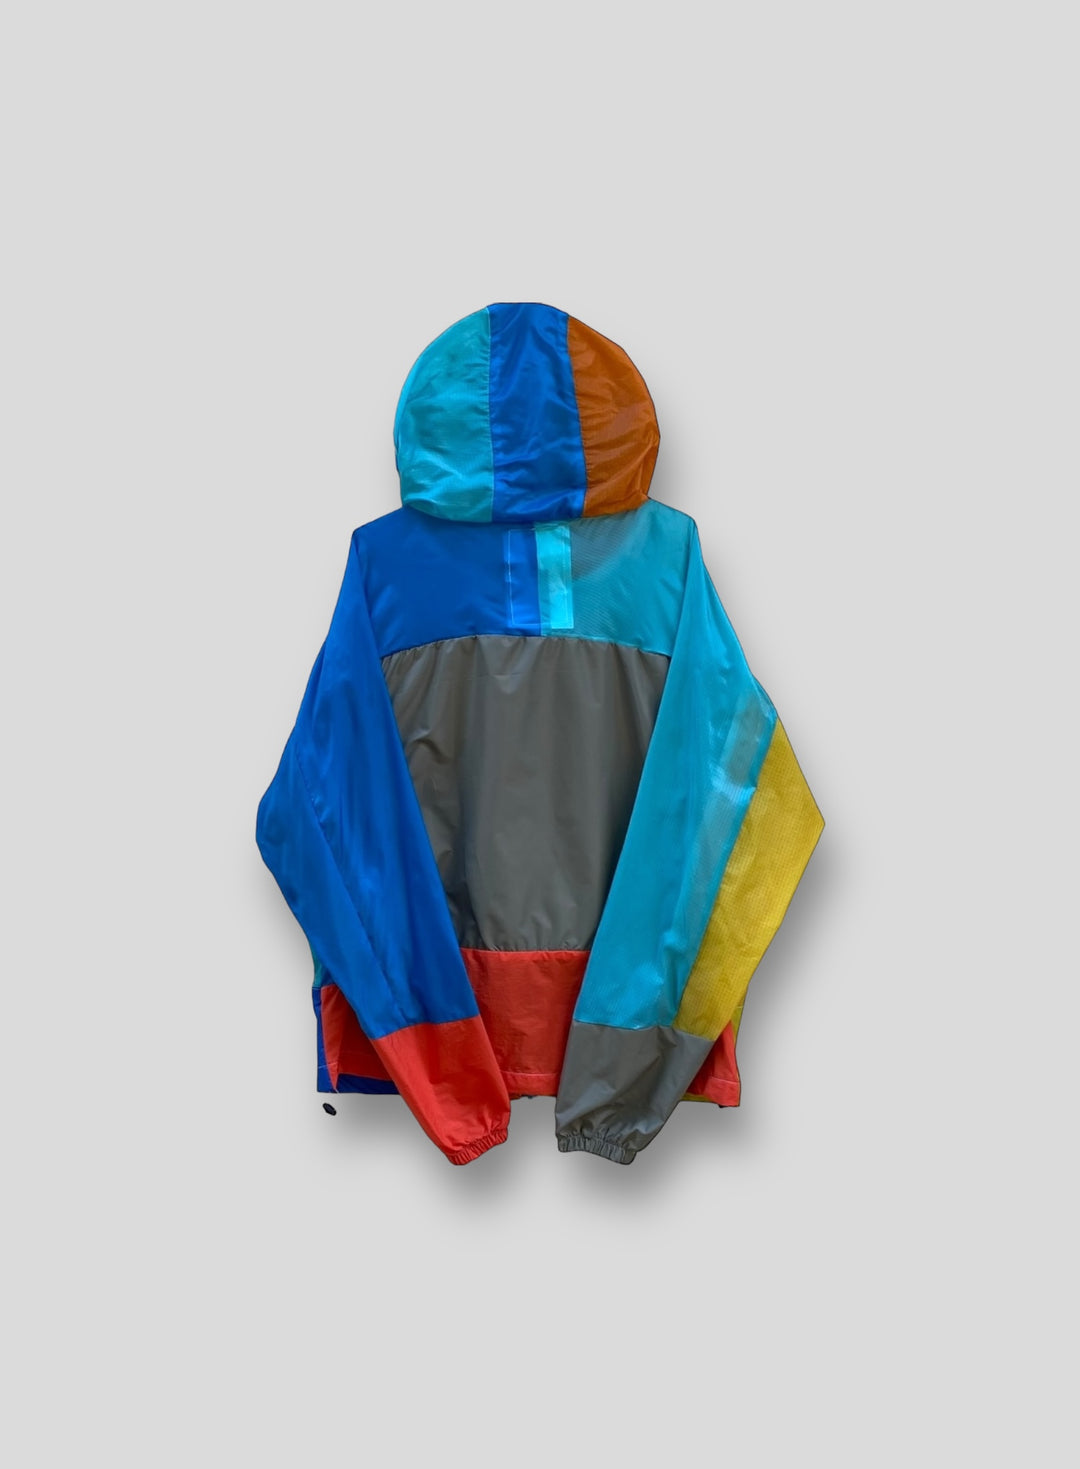 Upcycled Parachute Jacket (Medium - M.a.34.22)